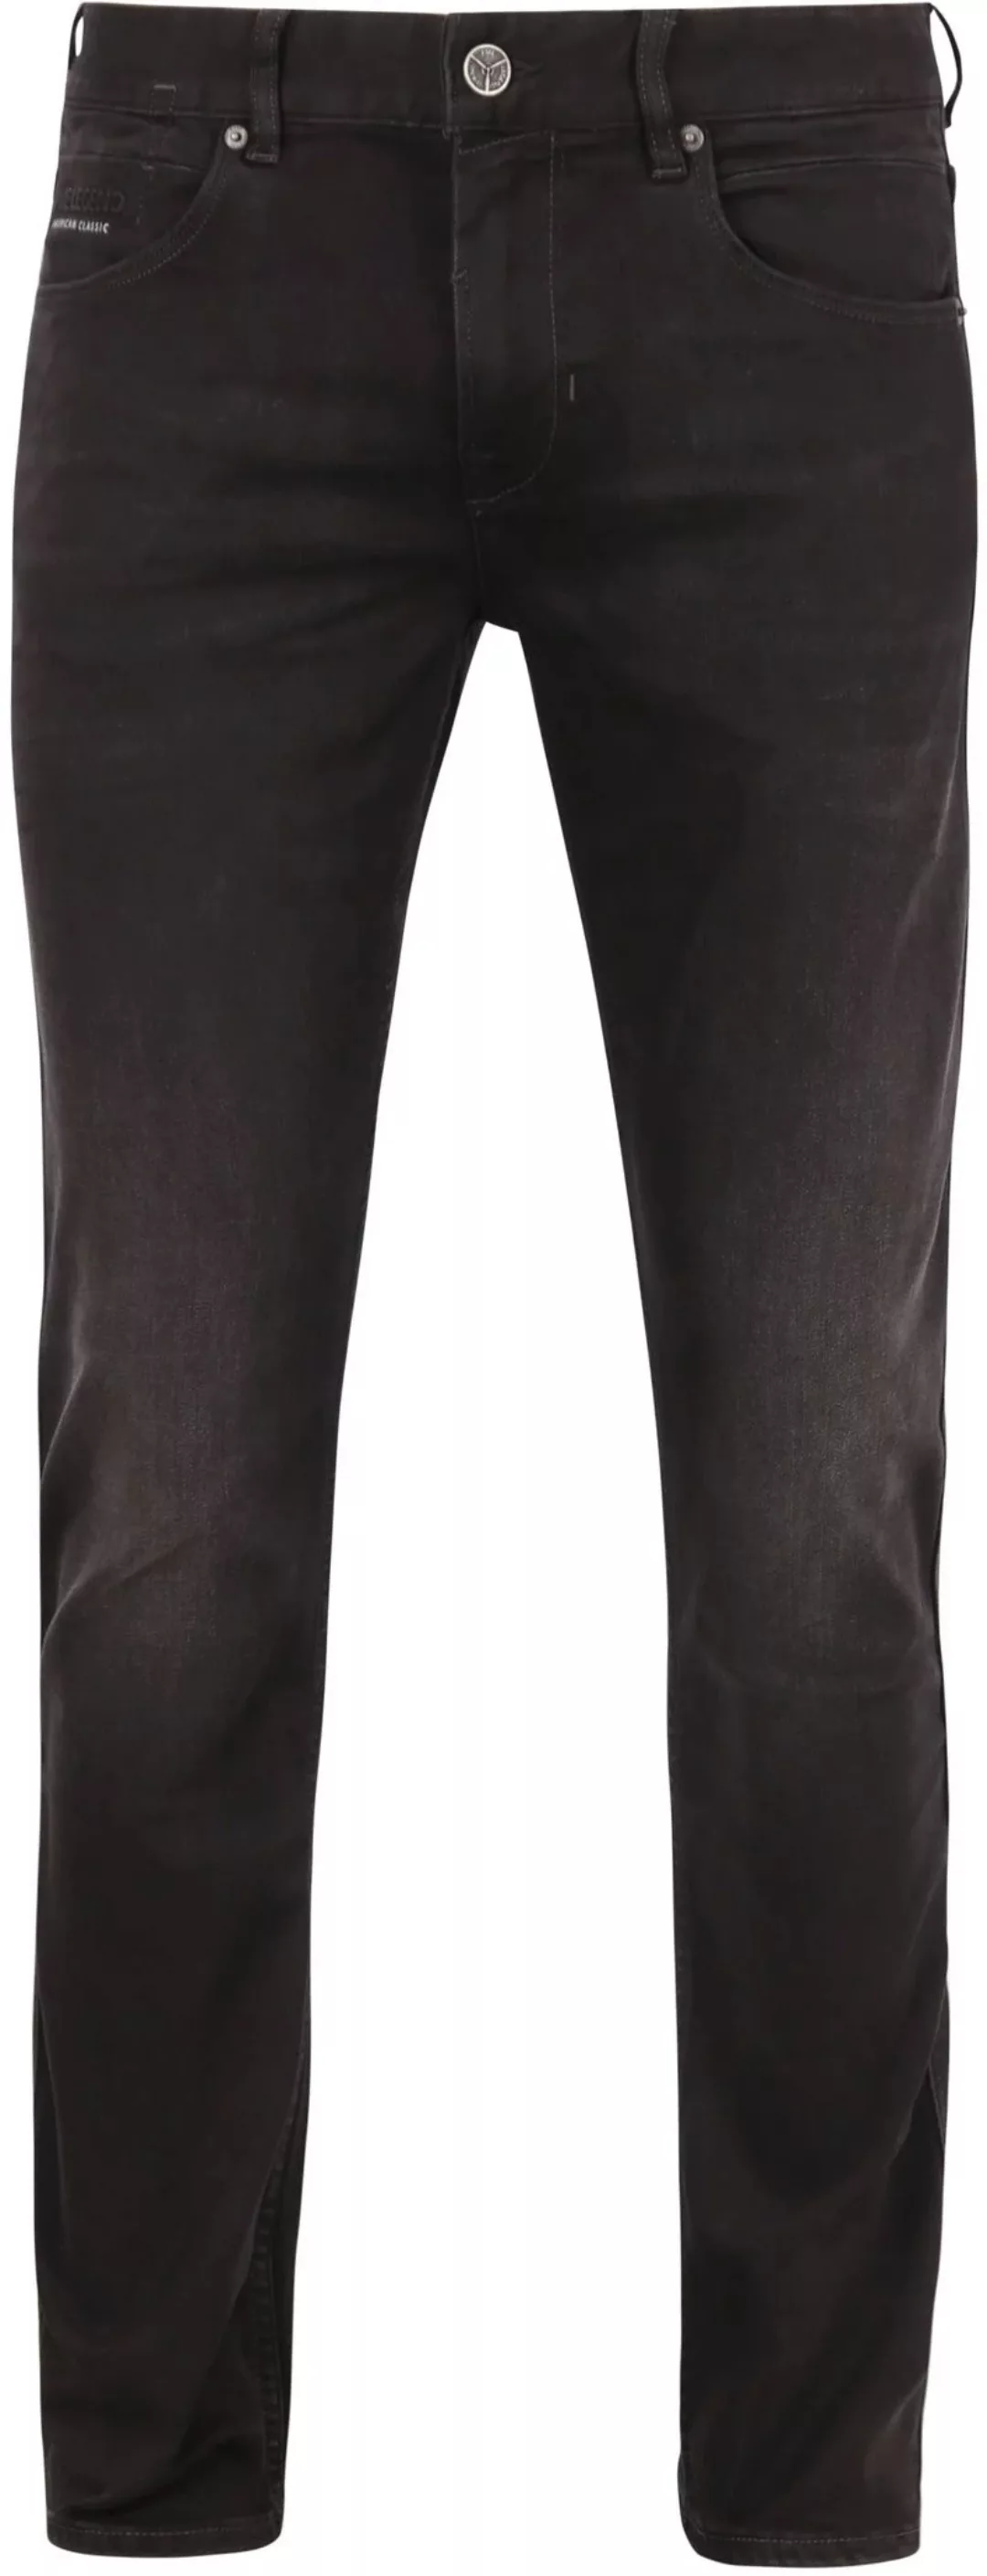 PME Legend Nightflight Jeans Schwarz RBD - Größe W 34 - L 30 günstig online kaufen